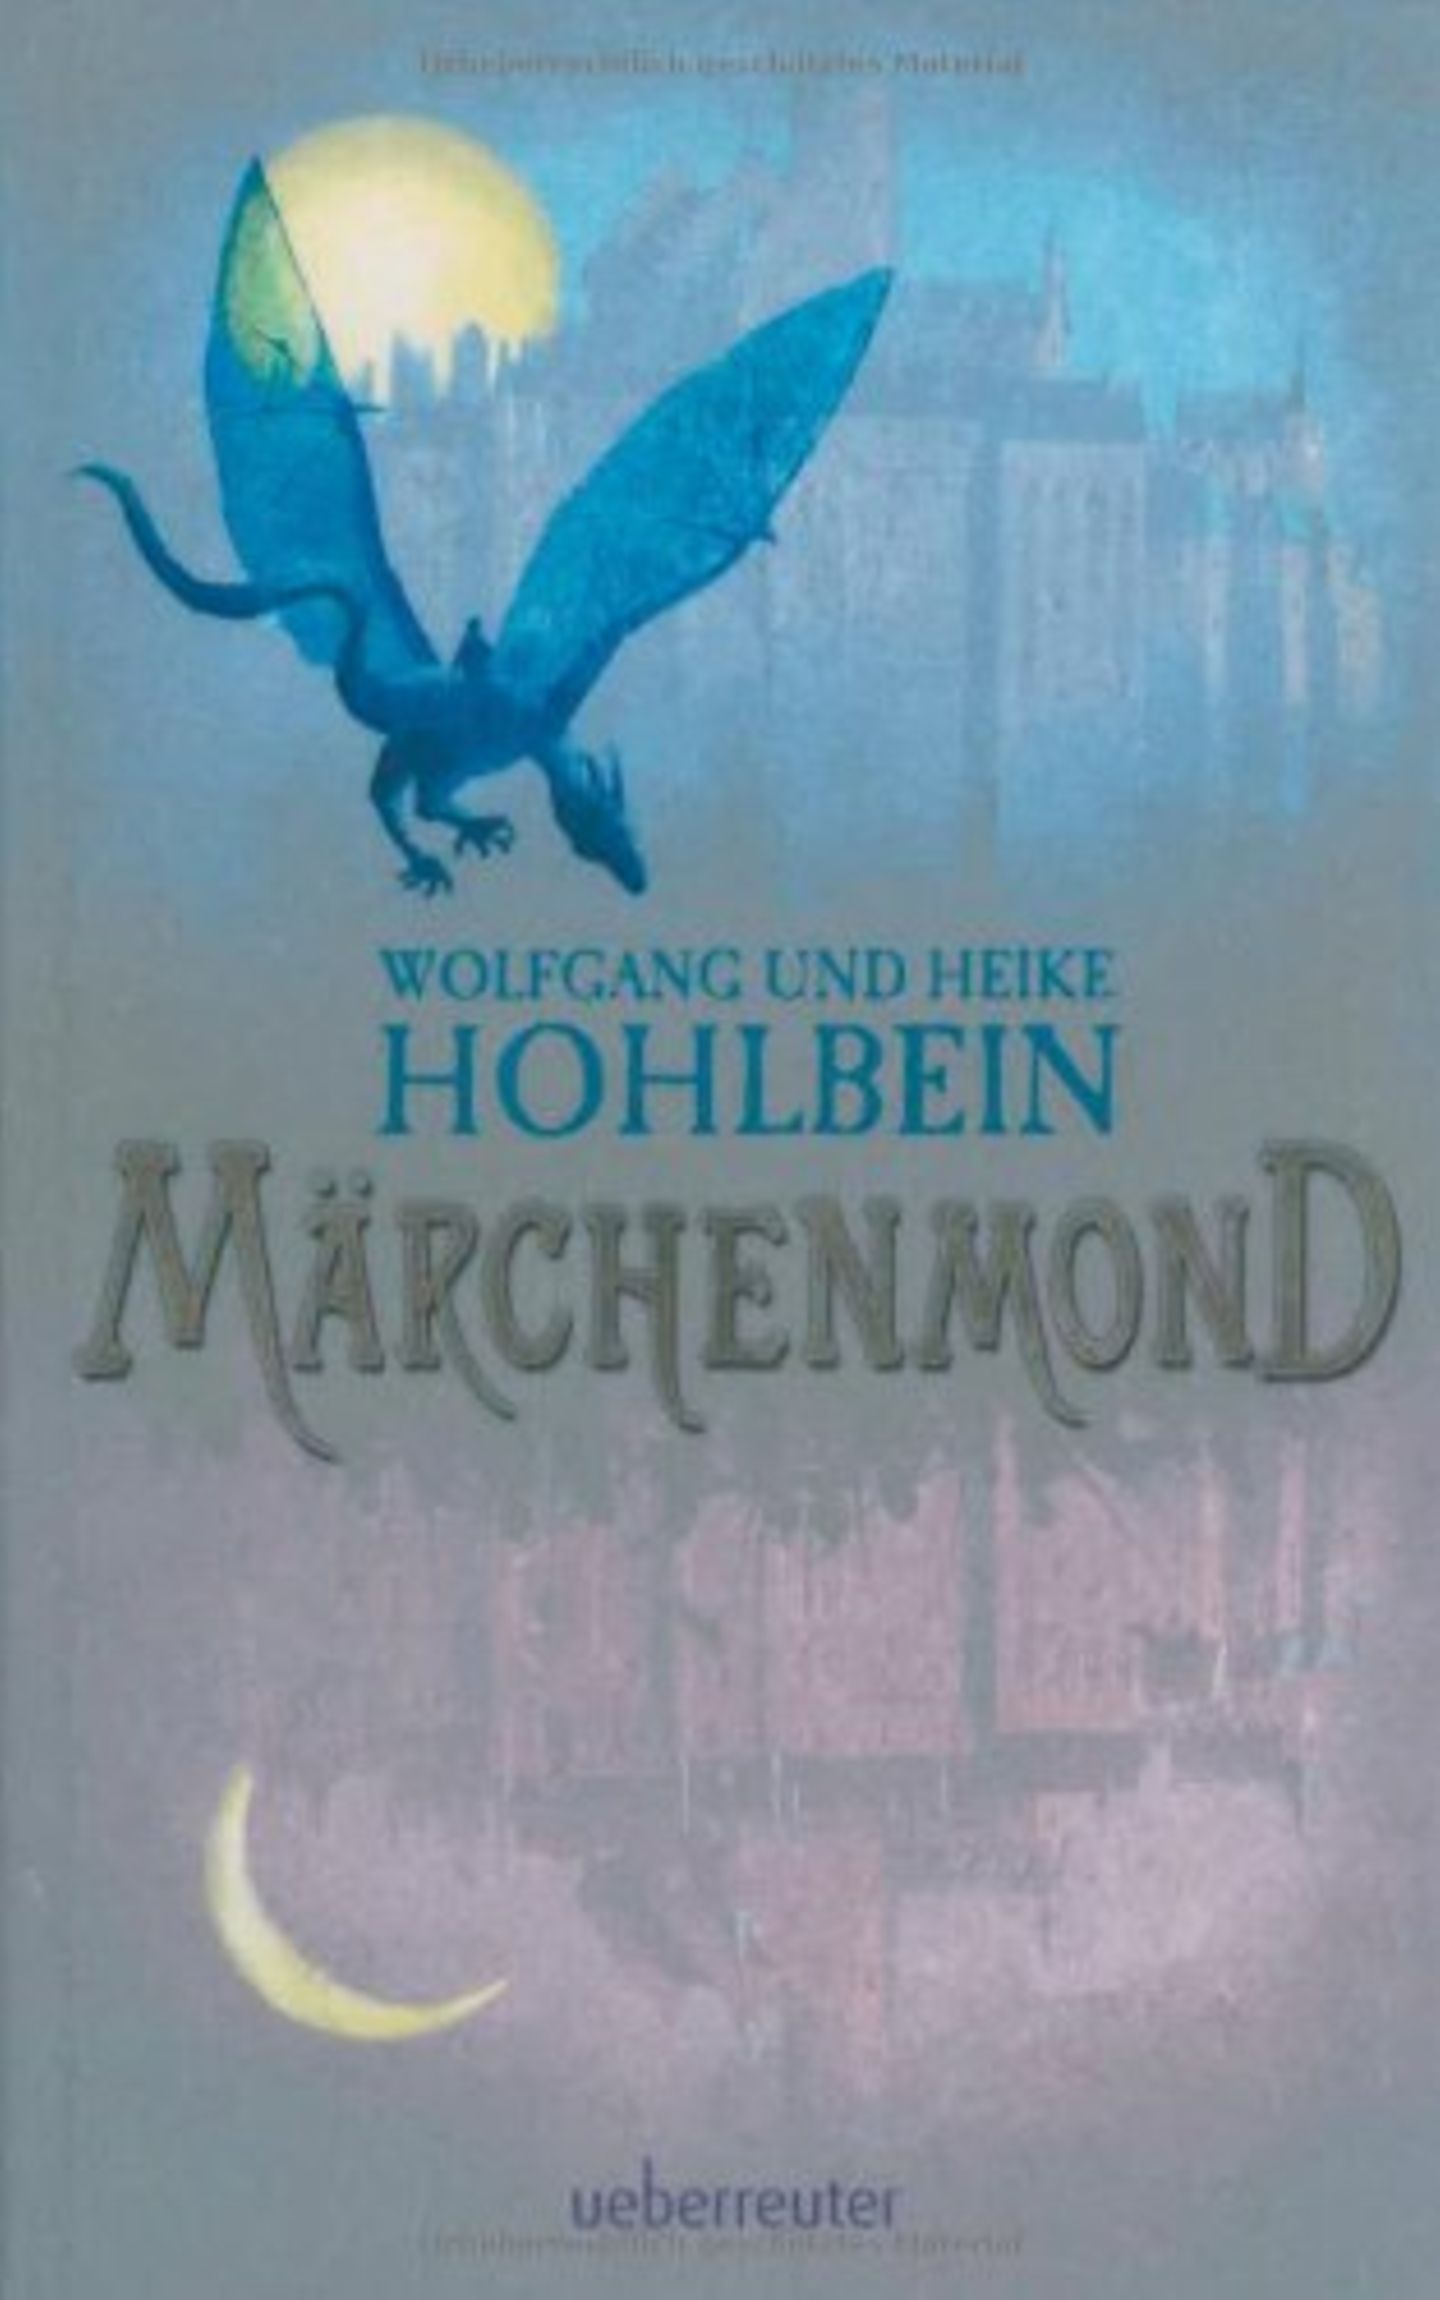 Ulaubslektüre: "Märchenmond" von Wolfgang und Heike Hohlbein